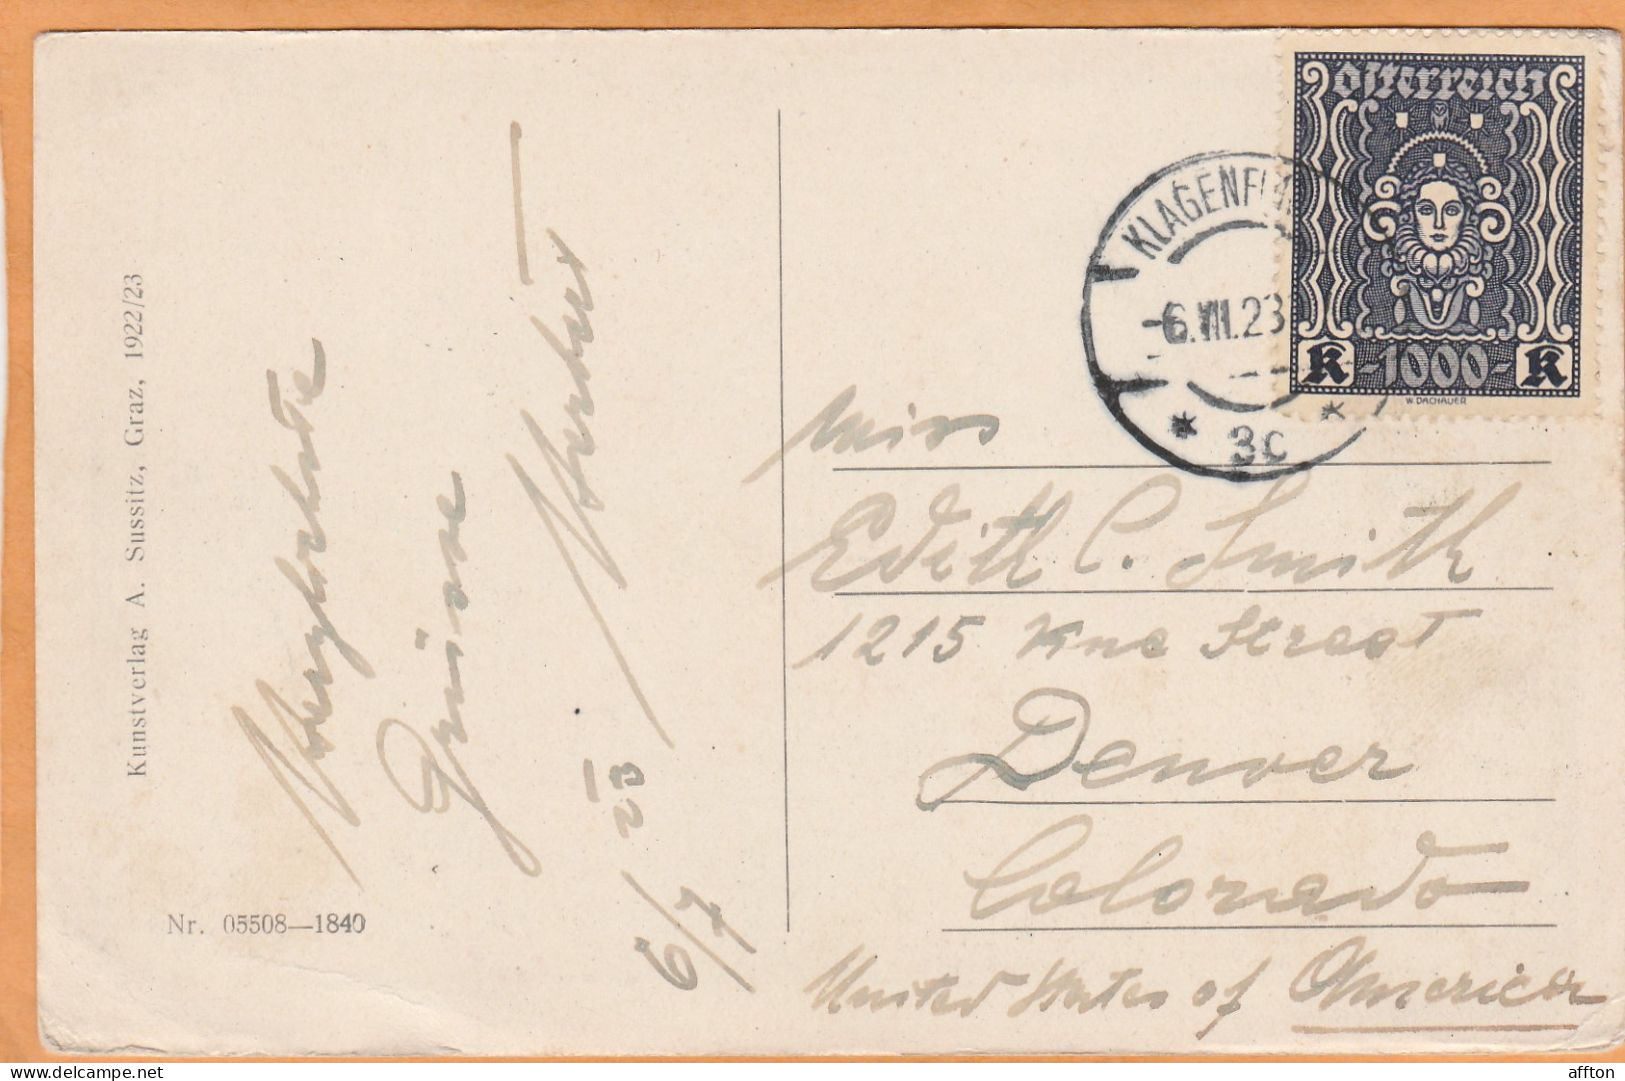 Velden Am Worthersee Austria 1923 Postcard Mailed - Velden